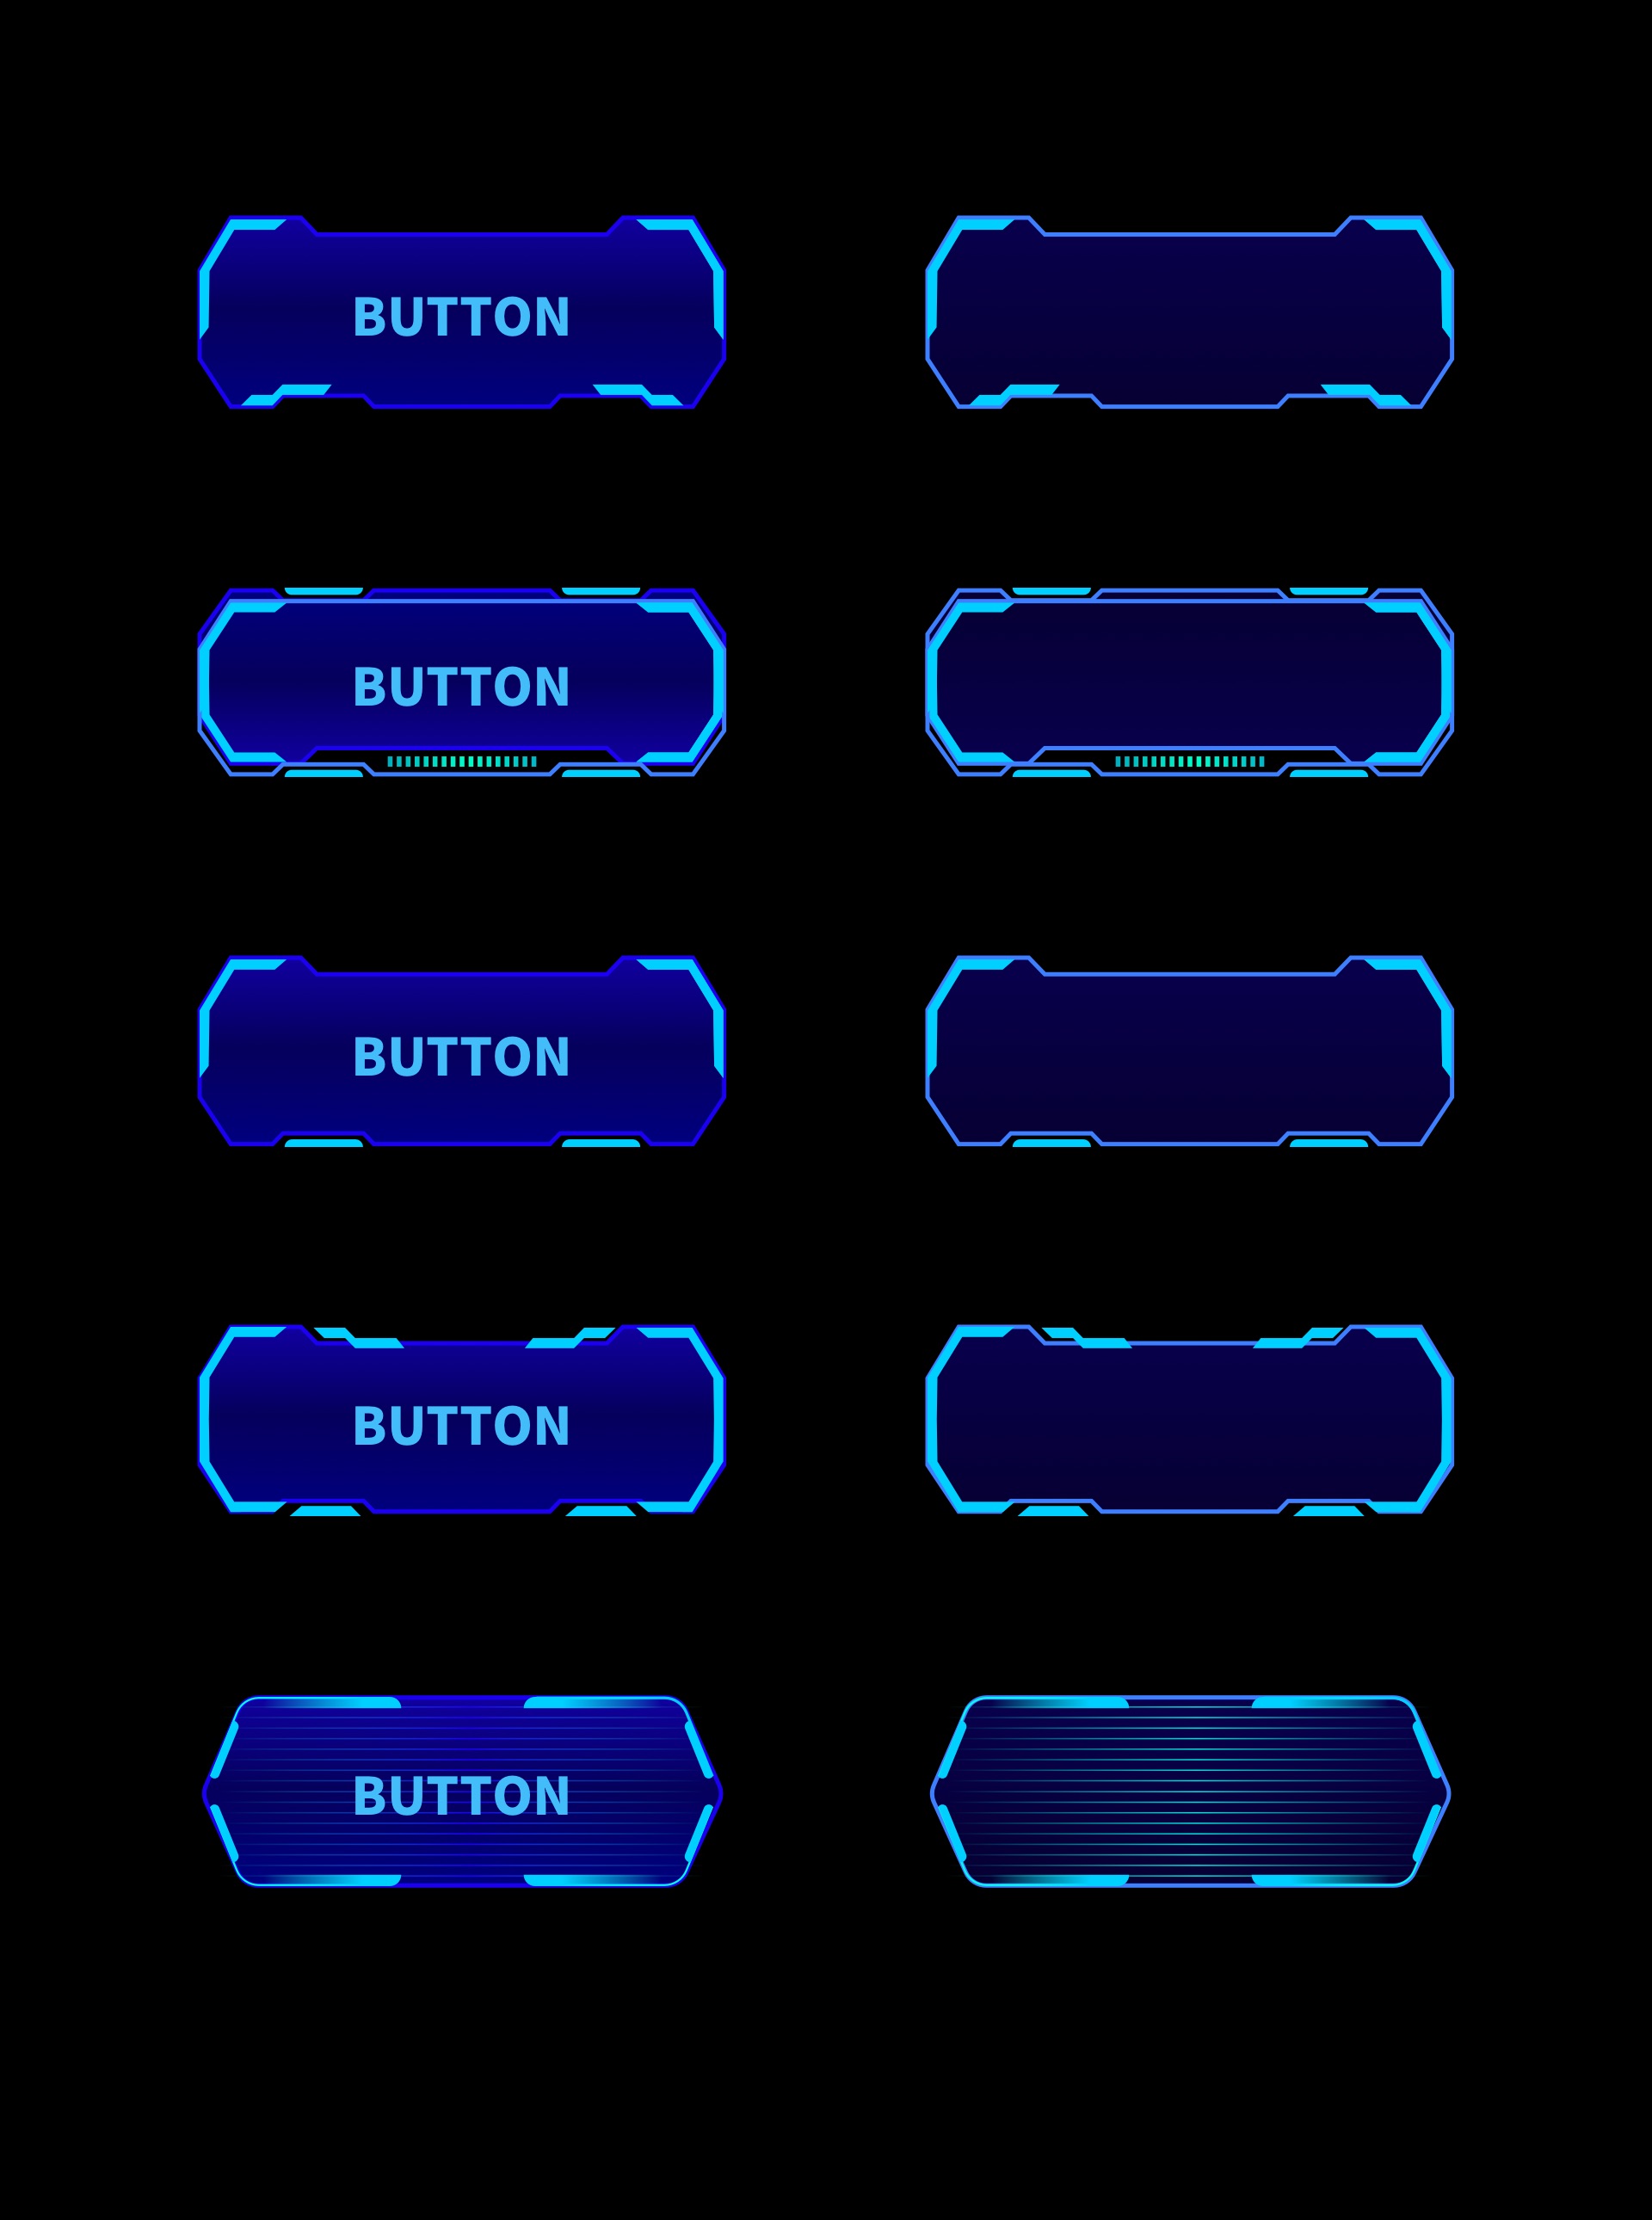 按钮 按键科技感 游戏按钮 UI素材科技感 质感通透暗黑 蓝色机械边框 霓虹灯 光感图片